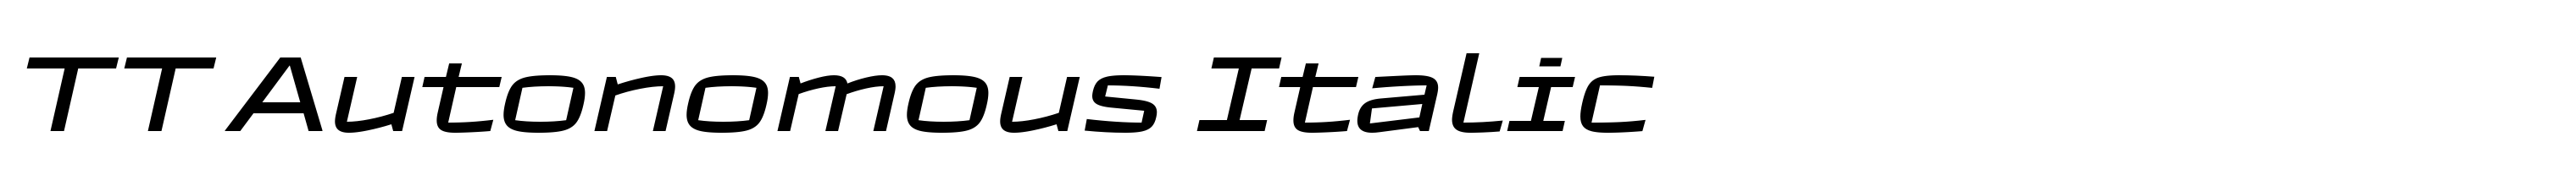 TT Autonomous Italic